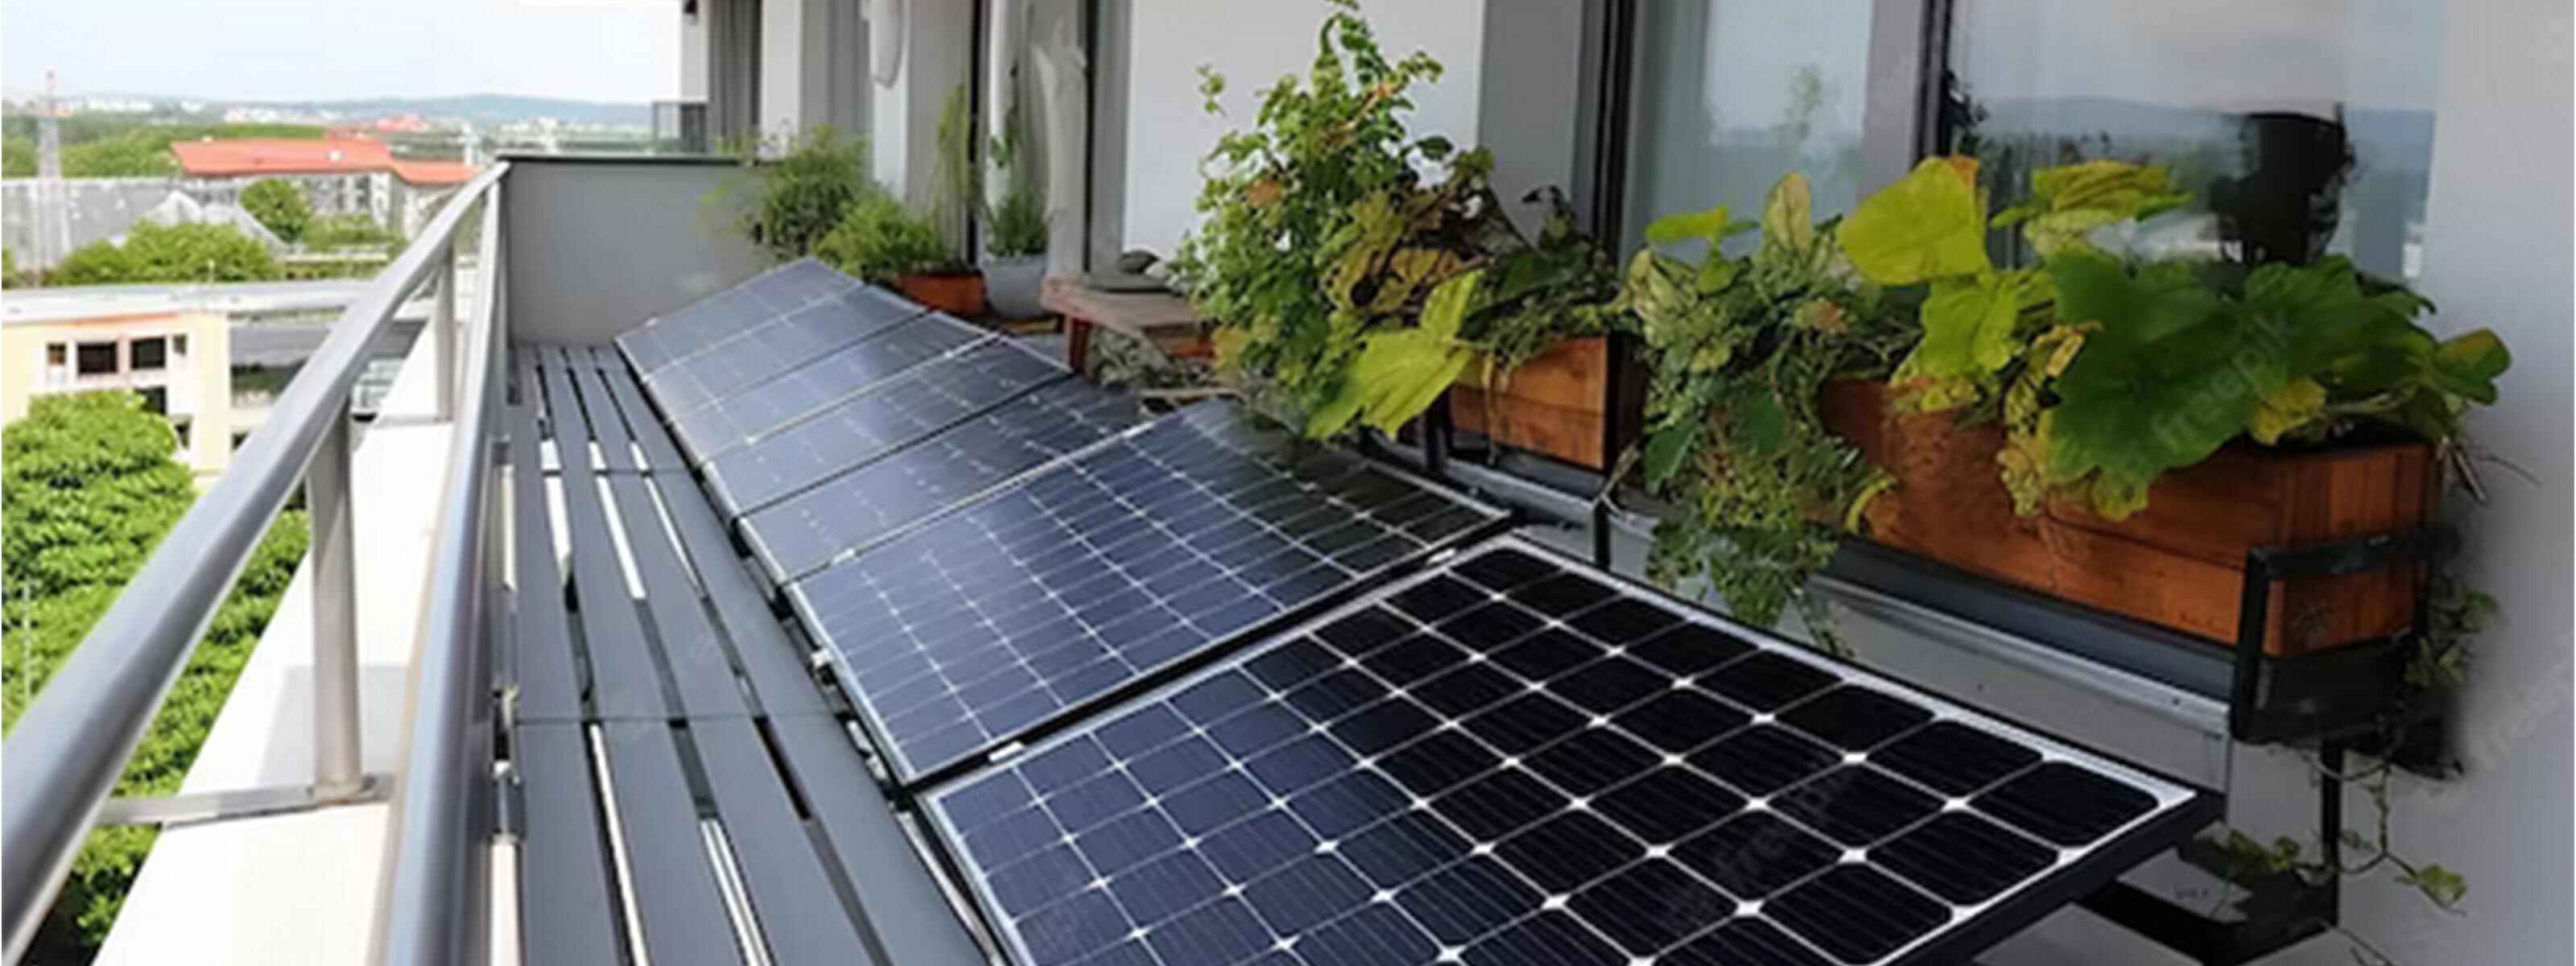 Solaranlagen auf Balkonen mit Pflanzen sind ein Beitrag zur Energiewende und zur Senkung der Stromrechnung